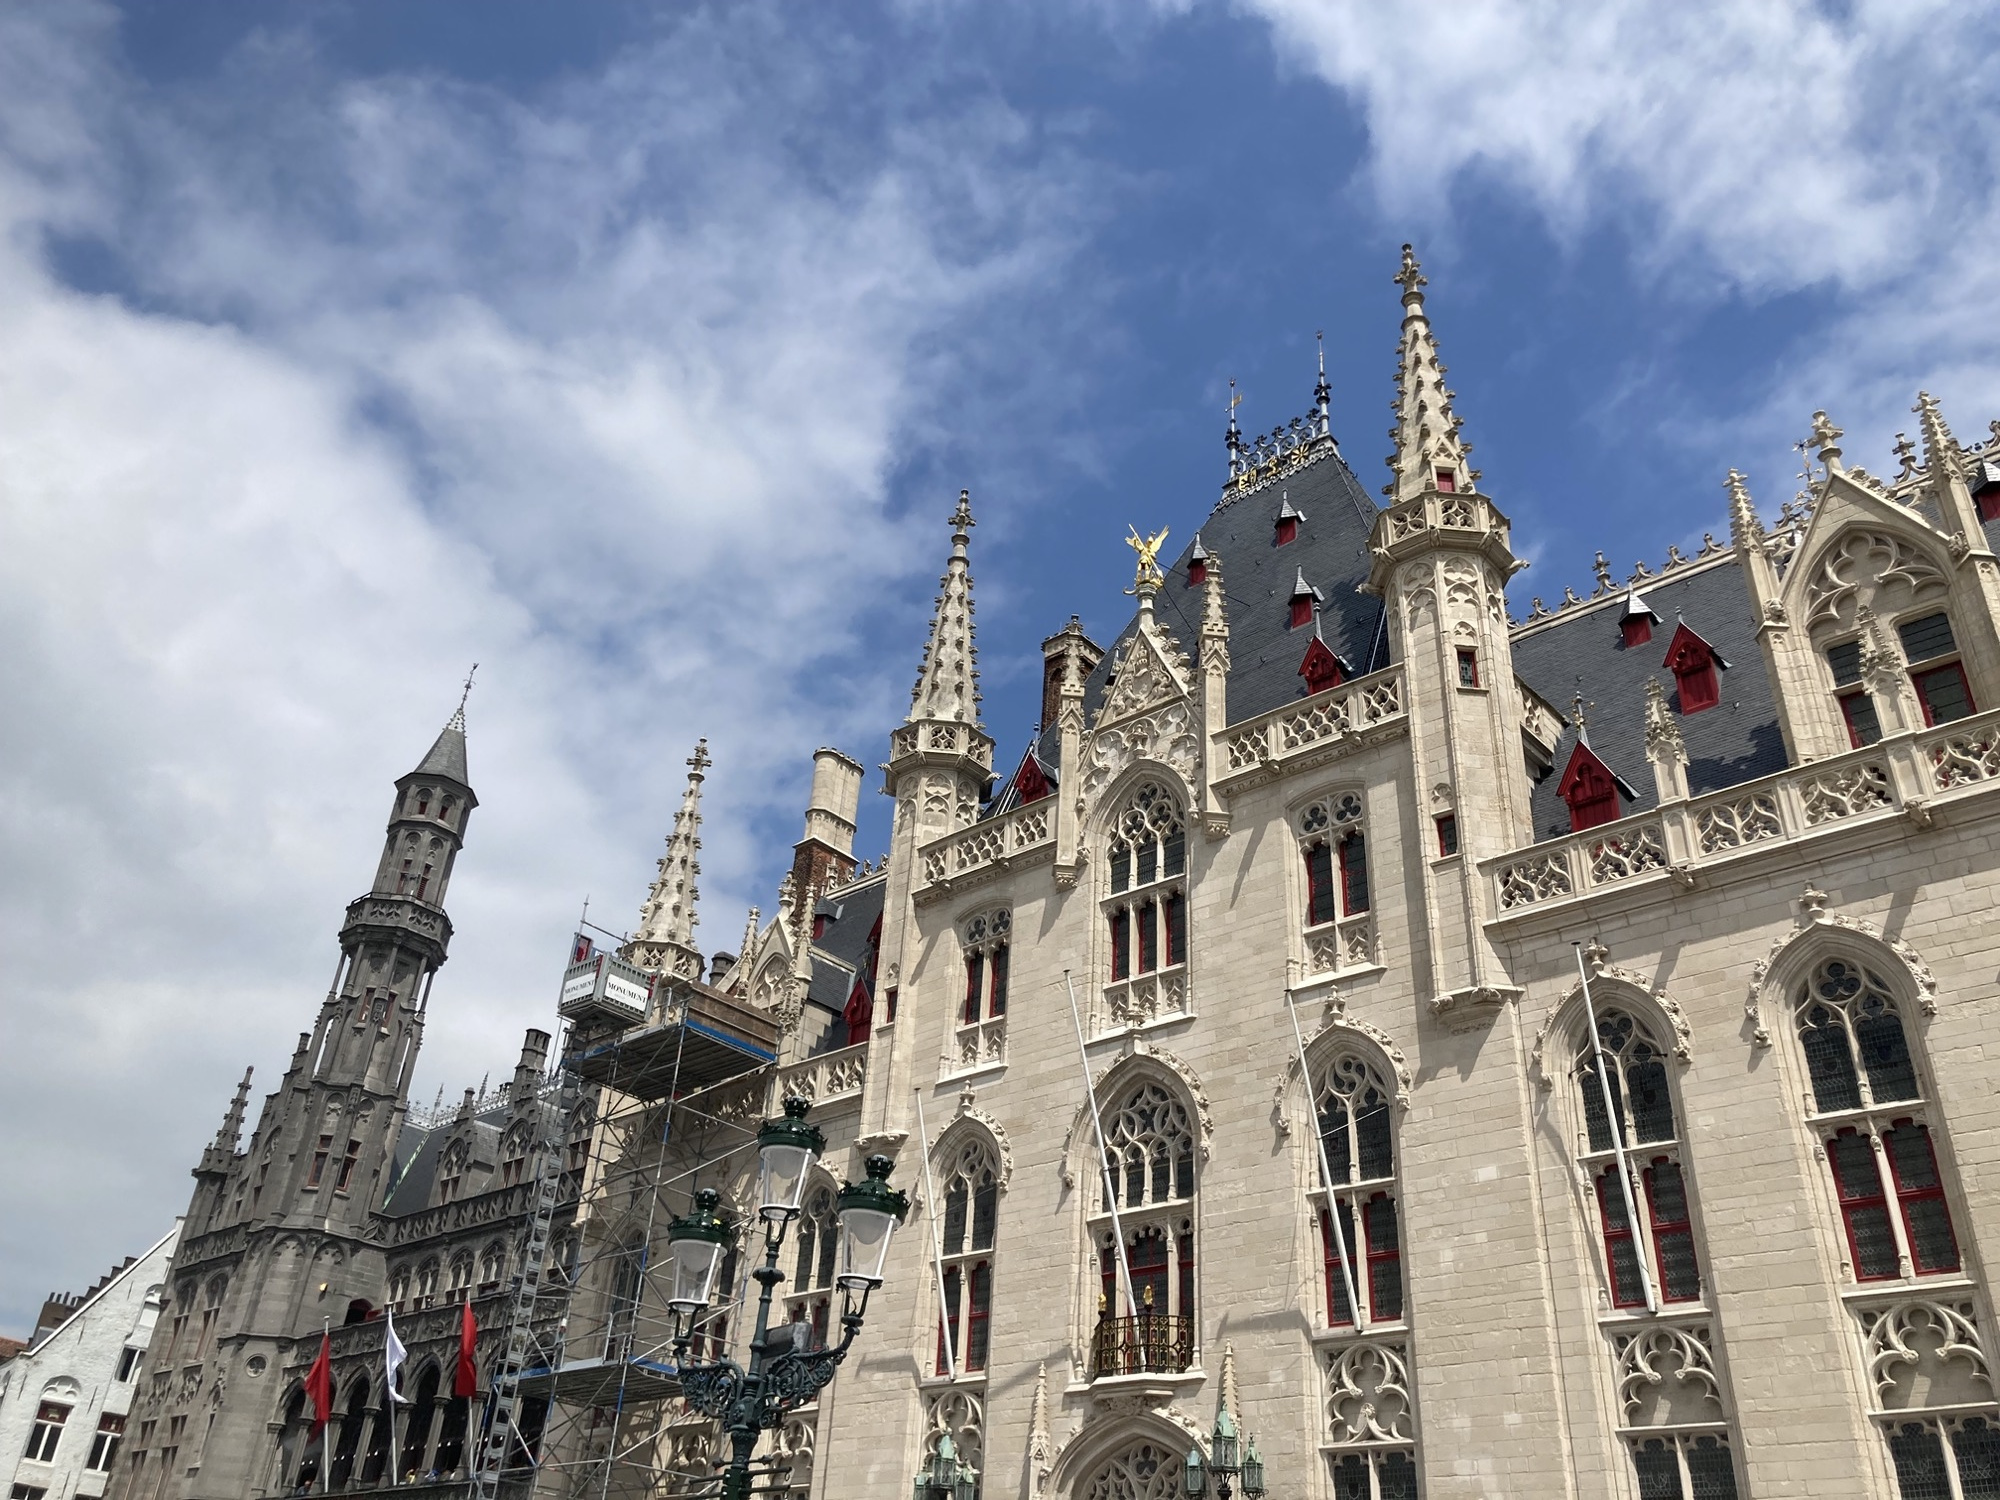 spätgotische Architektur des Rathaus von Brügge, weiße Ziegel, dekorative Türmchen und besonders auffällige kleine rote Giebel, die zwischen den grauen Dachschindeln hervorragen